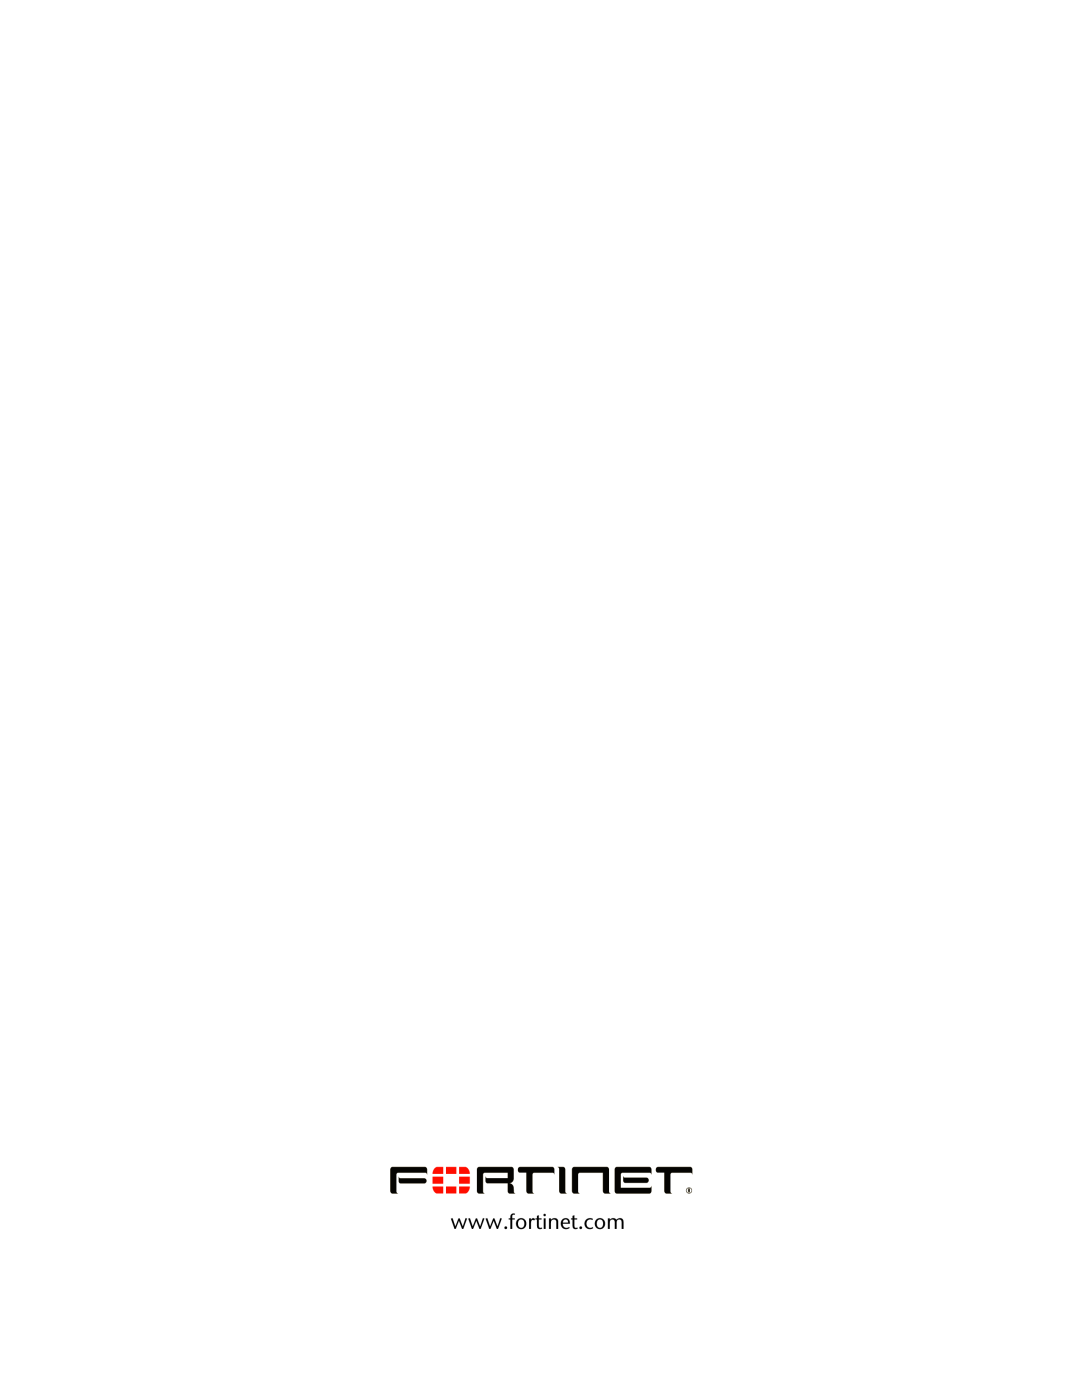 Fortinet 110C manual 